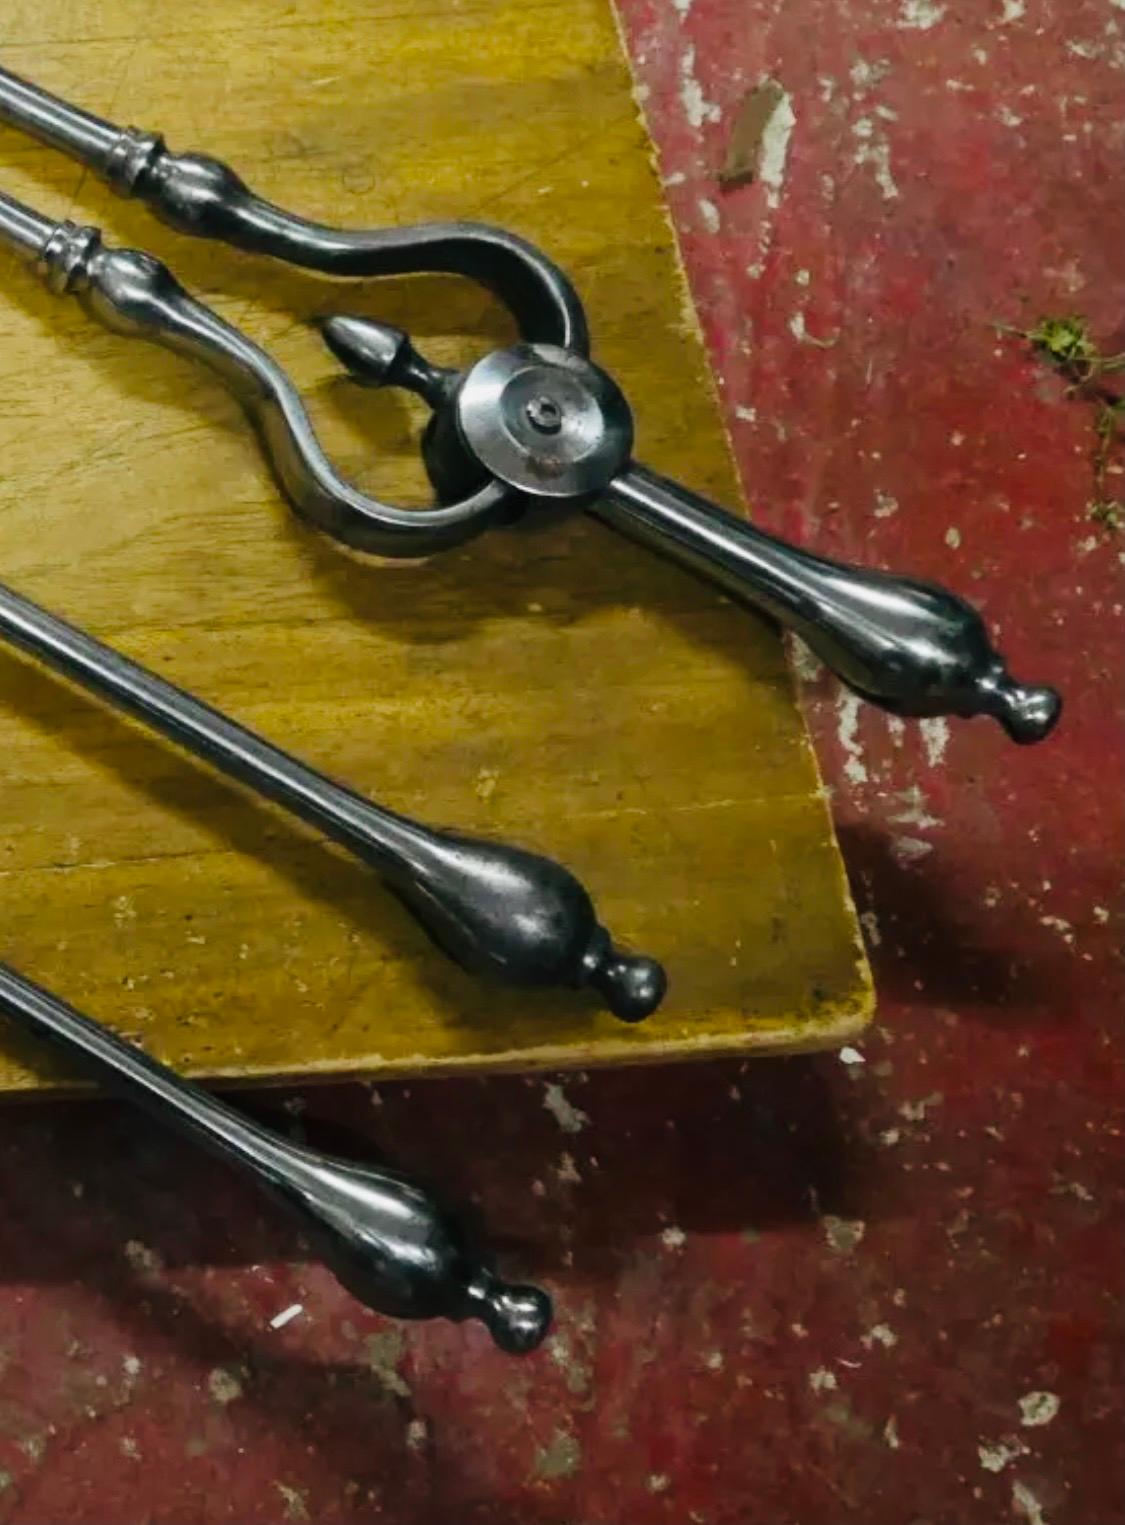 Charmant ensemble de fers à repasser en acier géorgien du début du 19e siècle comprenant un tisonnier, une pince et une pelle avec une lame décorative percée, tous avec des embouts allongés en forme de boule.

Écossais, vers 1820.